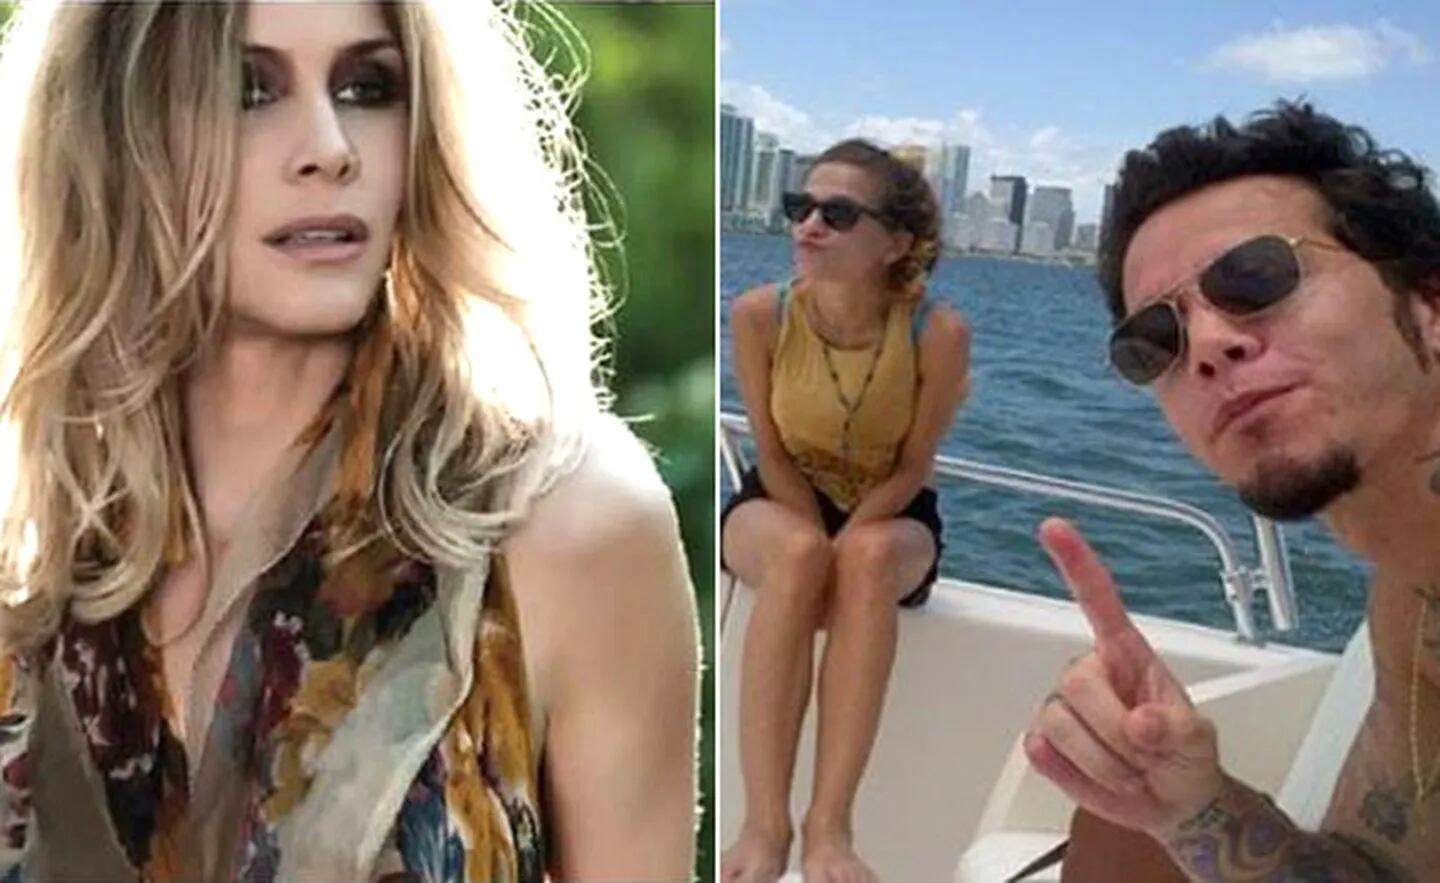 Izquierda: Guillermina Valdés. Derecha: Sebastián Ortega y su novia Ivana Figueiras en Miami. (Fotos: SH y Web)